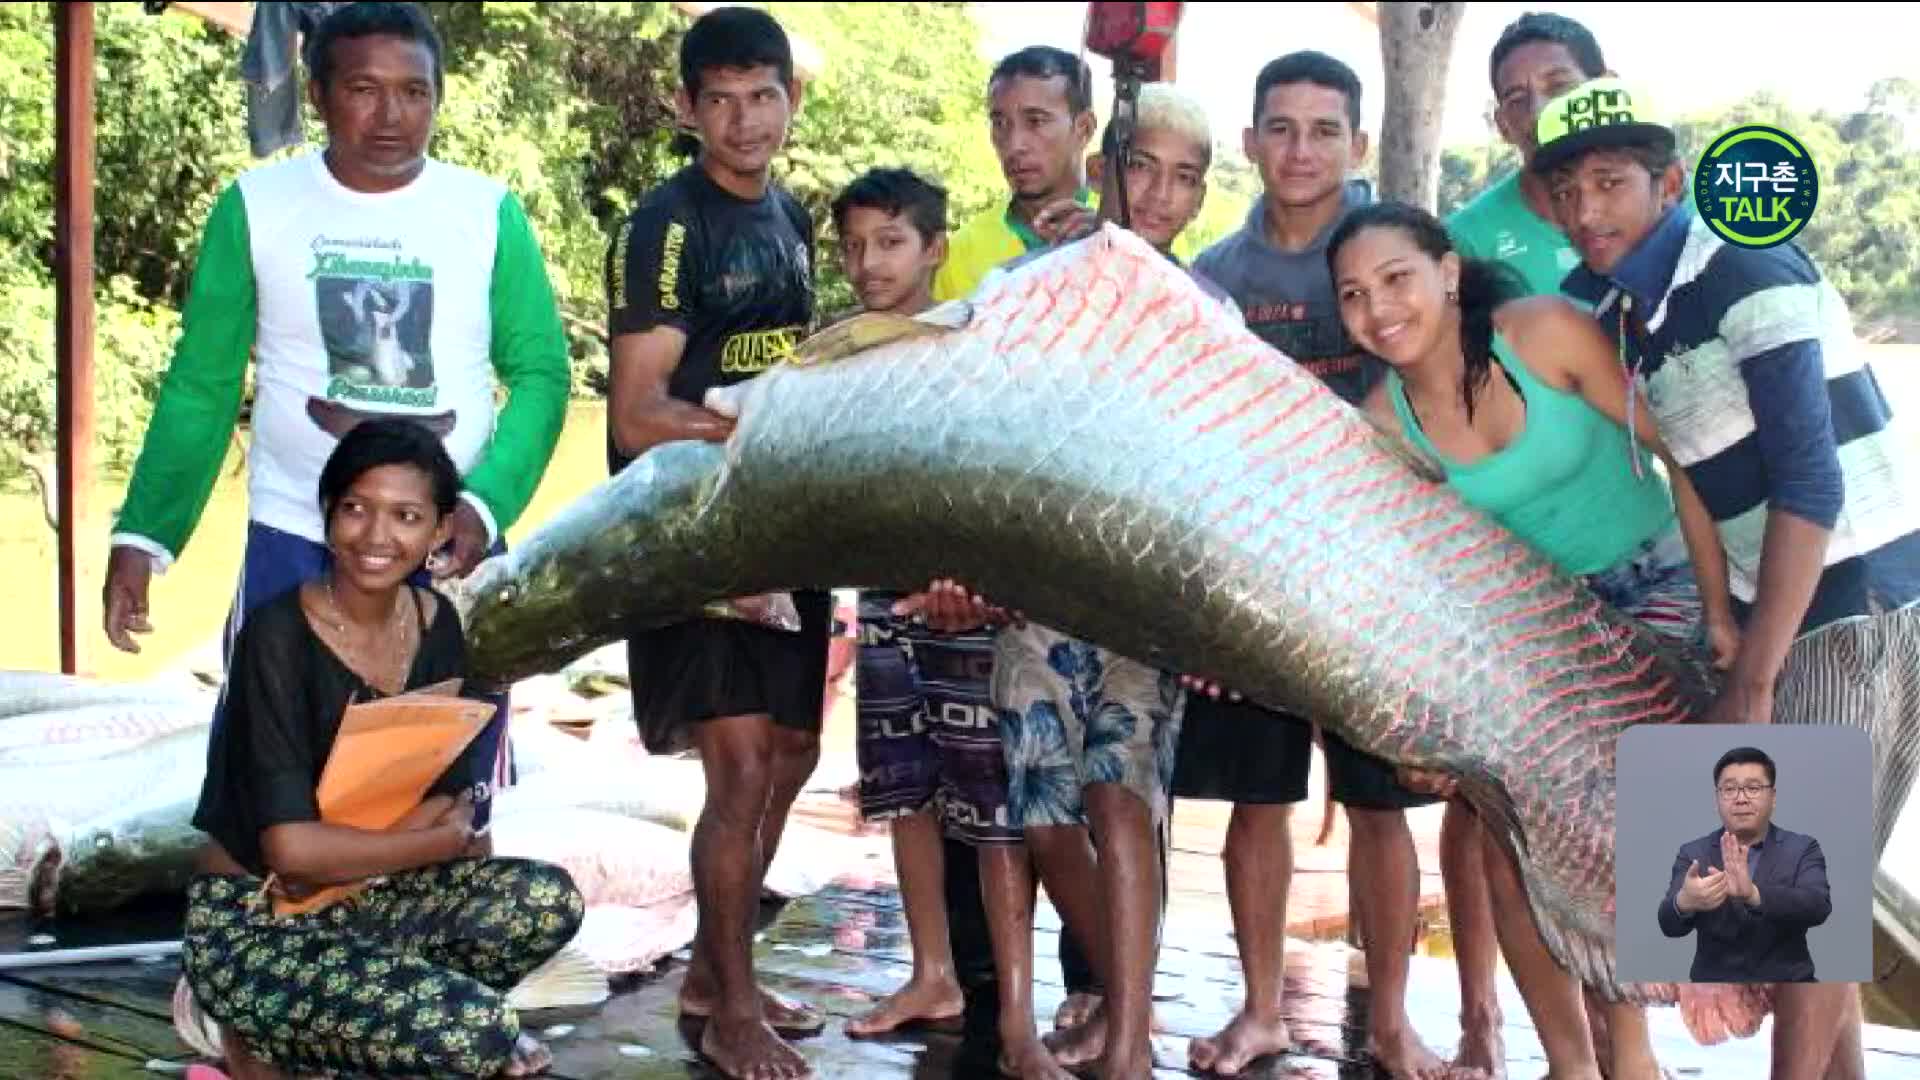 [지구촌 Talk] 세계 최대 담수어, 멸종 피한 비결은?